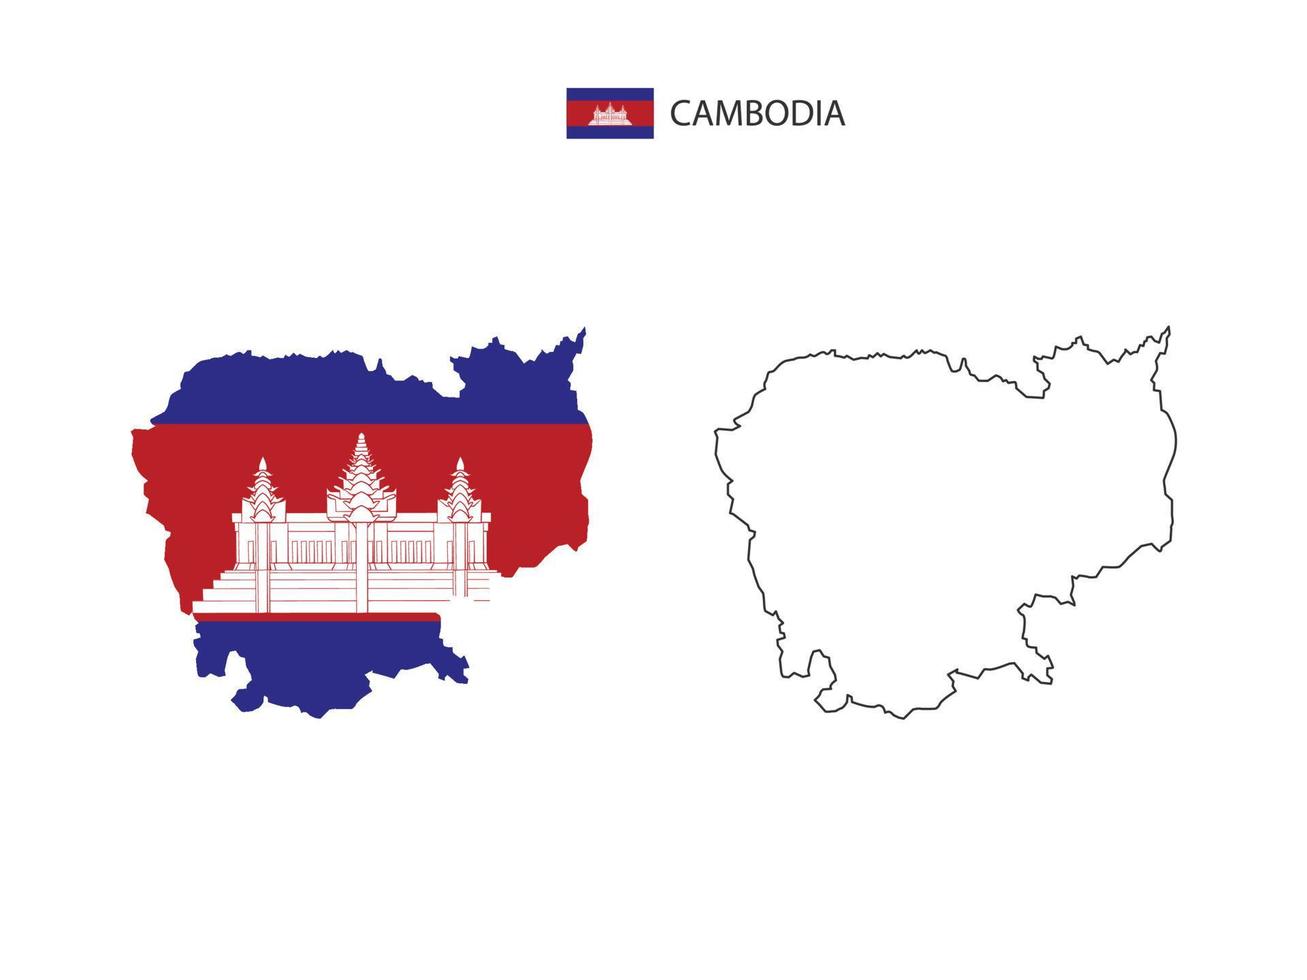 Cambodja kaart stad vector verdeeld door schets eenvoud stijl. hebben 2 versies, zwart dun lijn versie en kleur van land vlag versie. beide kaart waren Aan de wit achtergrond.